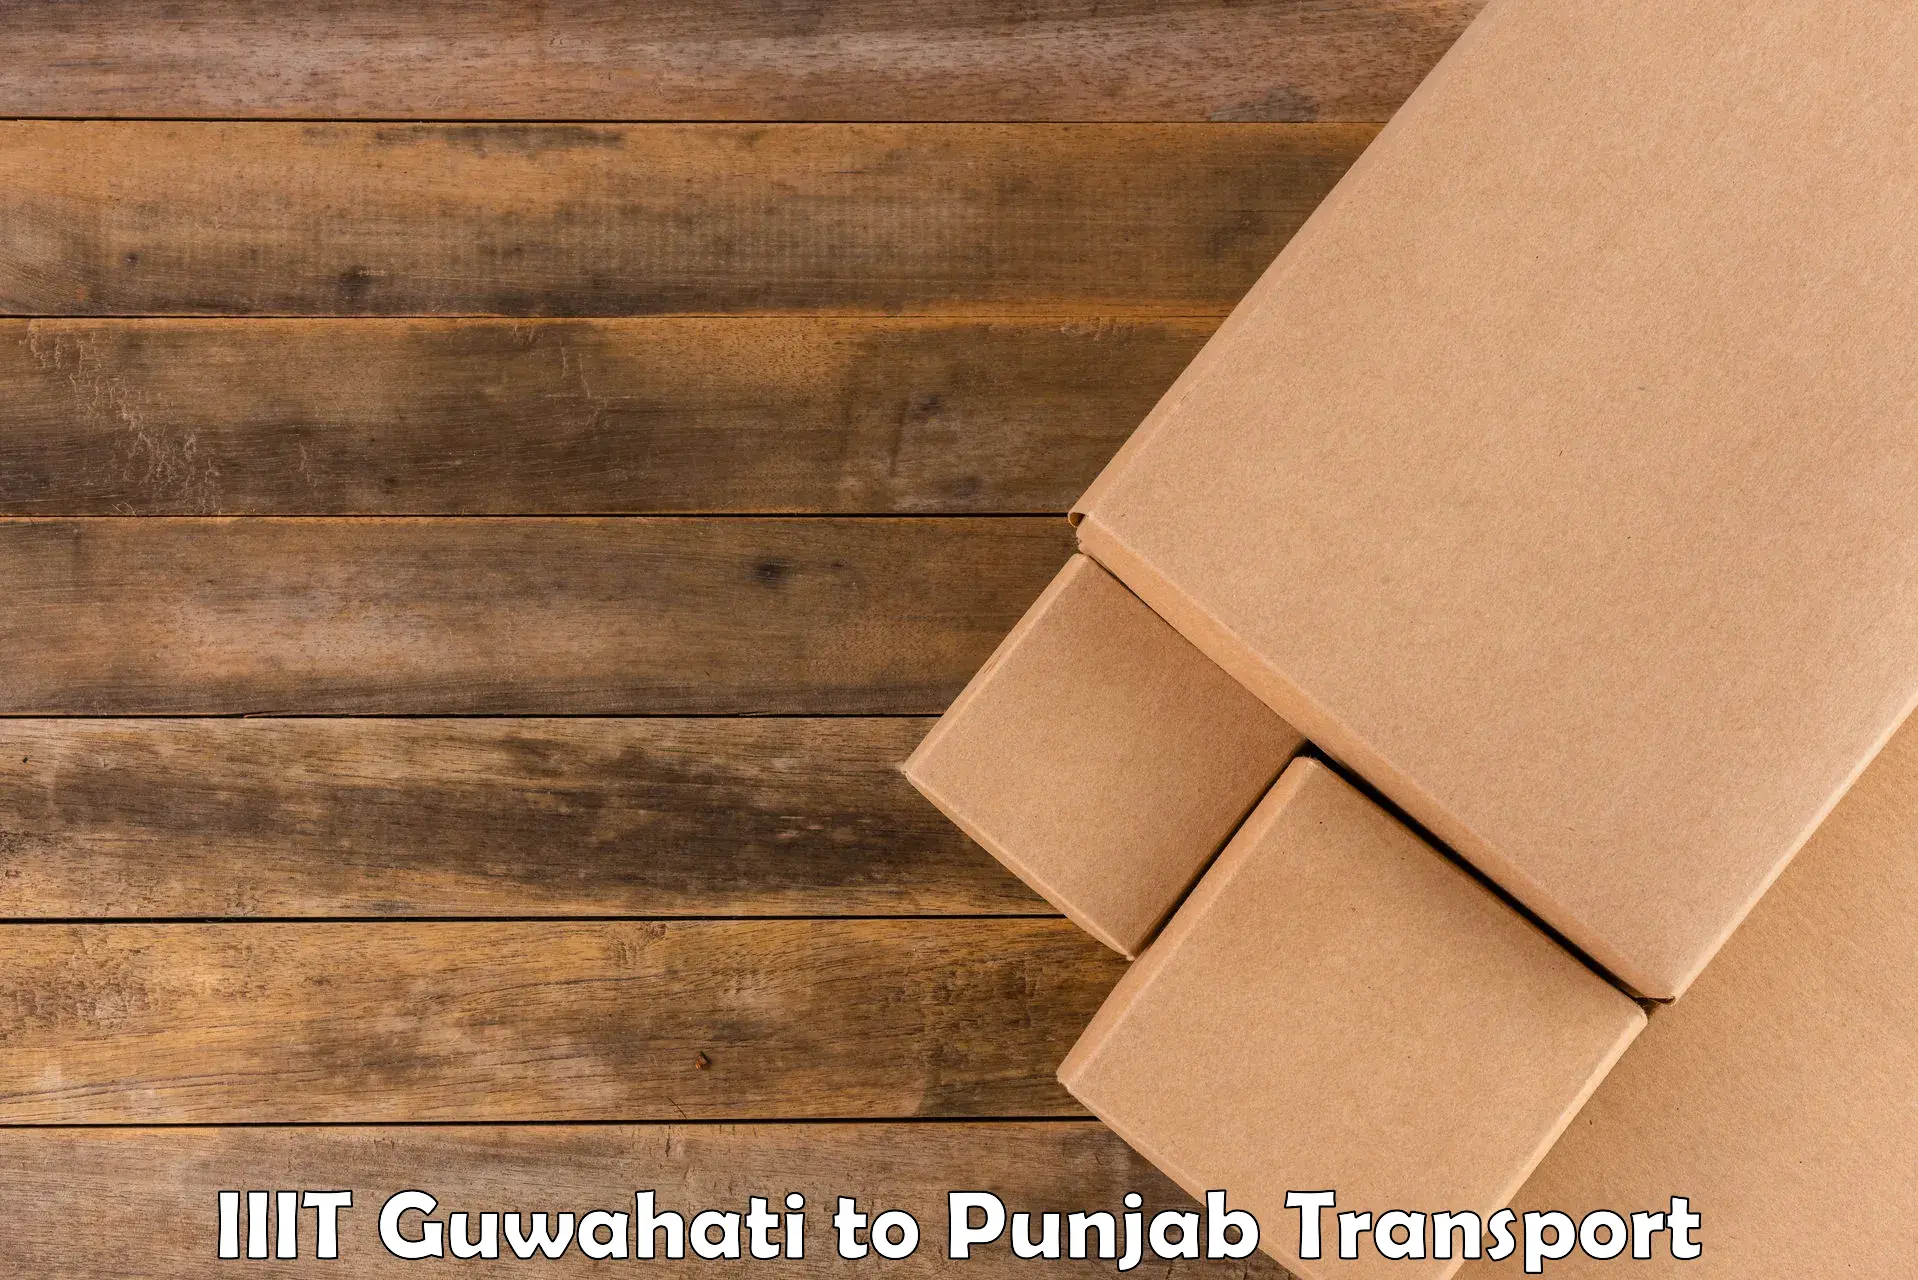 Truck transport companies in India in IIIT Guwahati to Tarn Taran Sahib